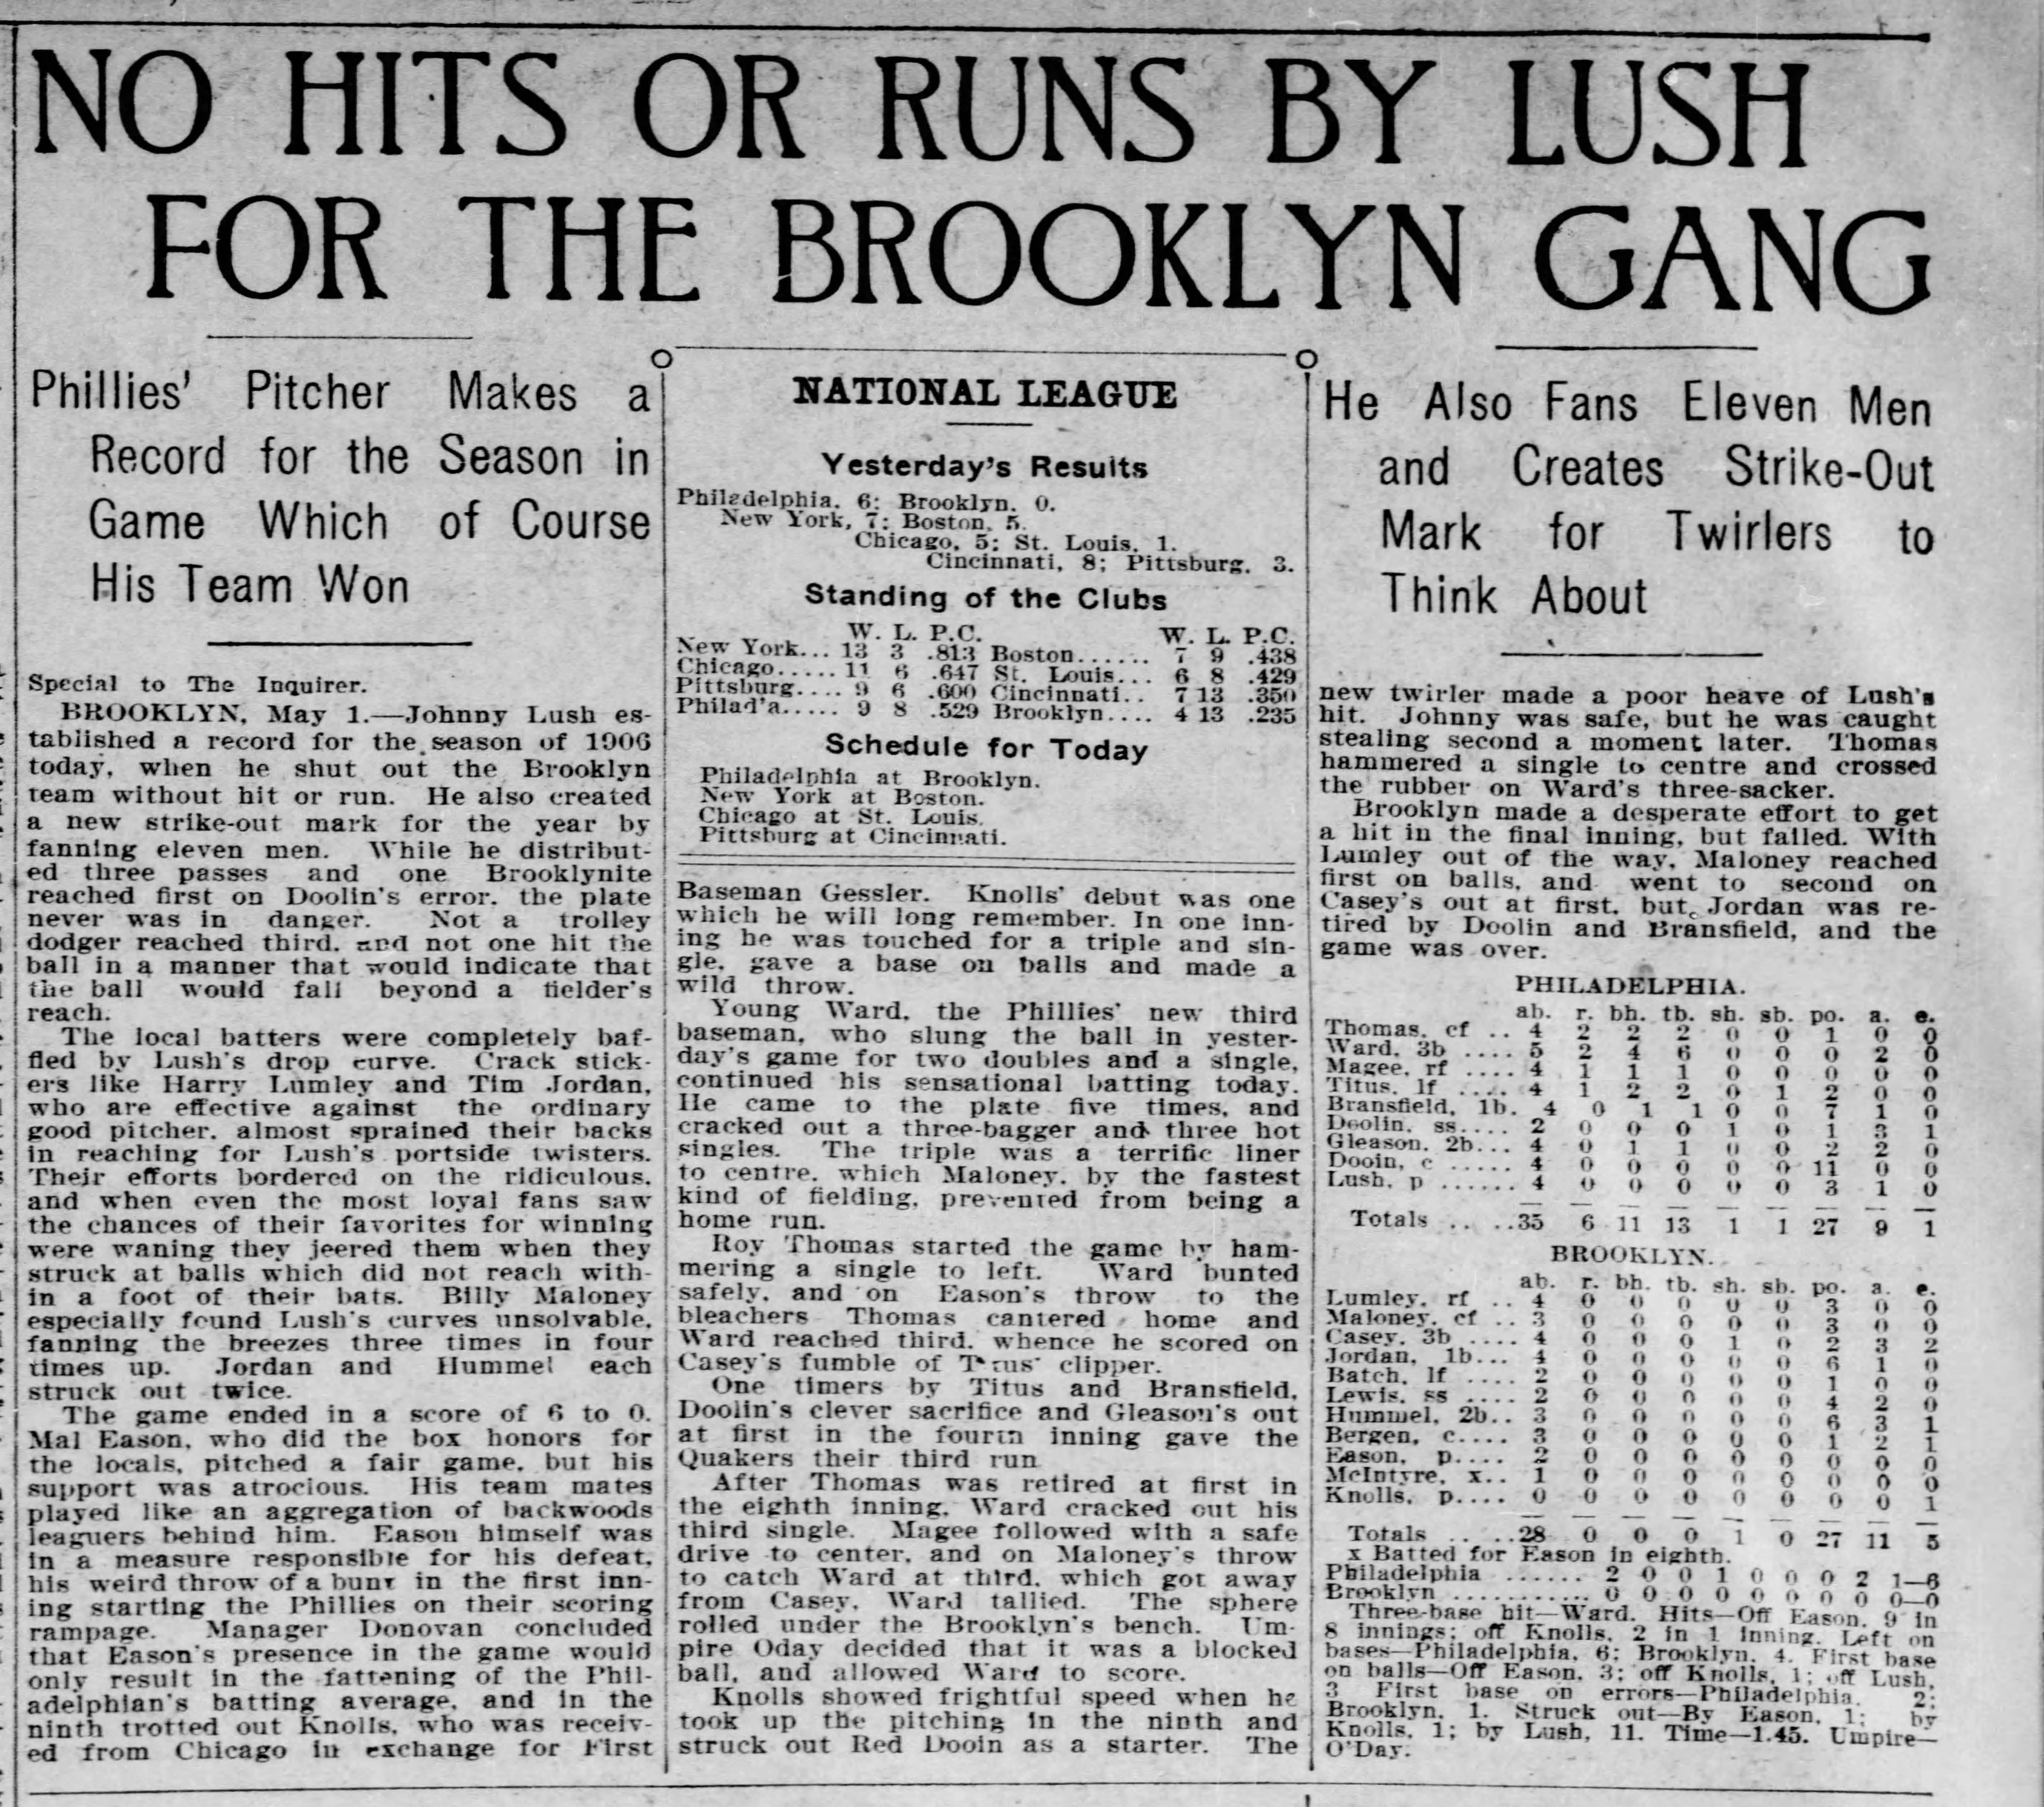 John Lush thew a no-hitter on May 1, 1906.